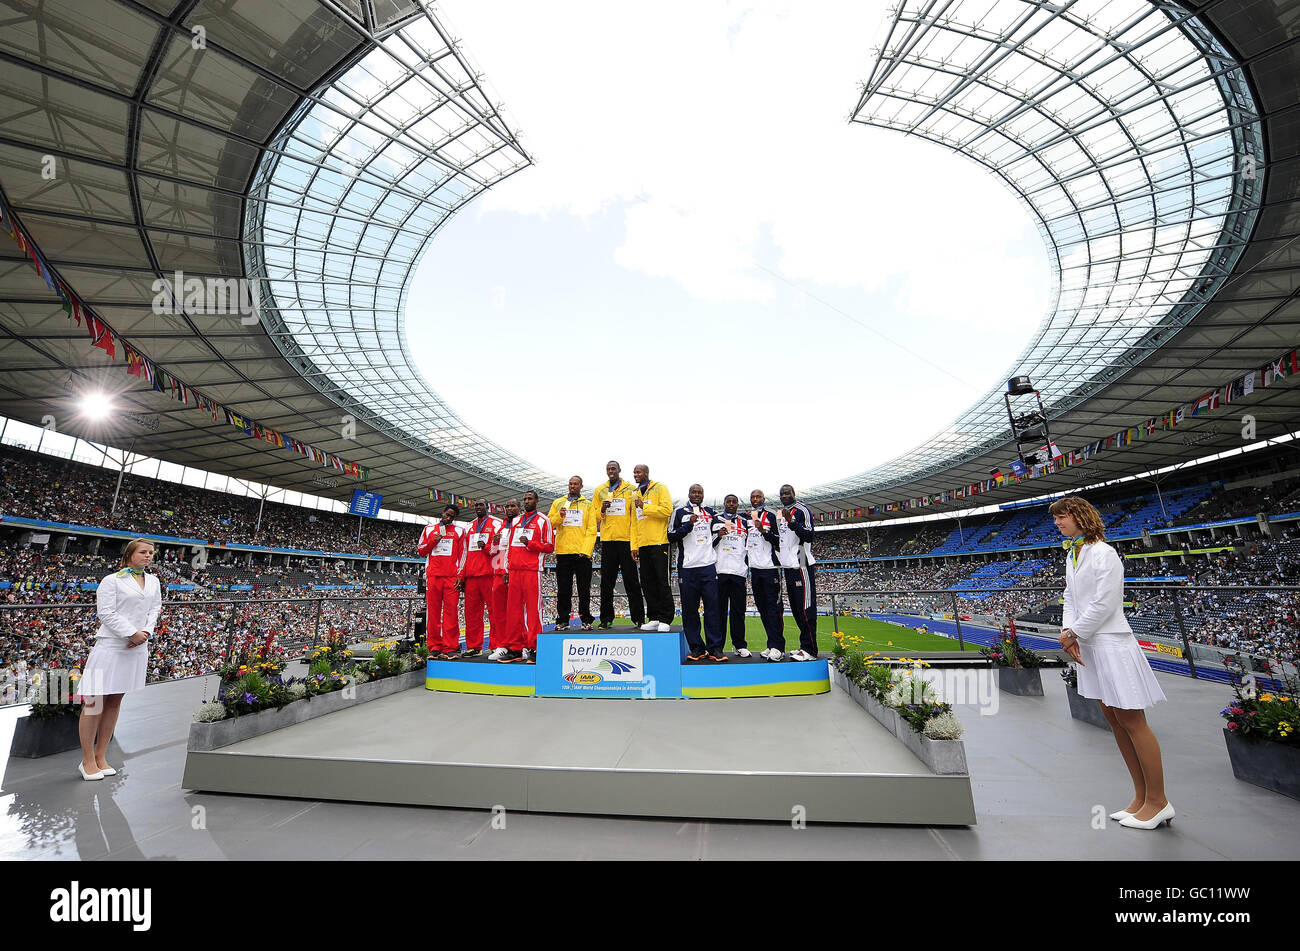 Athlétisme - Championnats du monde d'athlétisme de l'IAAF - Jour 9 - Berlin 2009 - Olympiastadion Banque D'Images